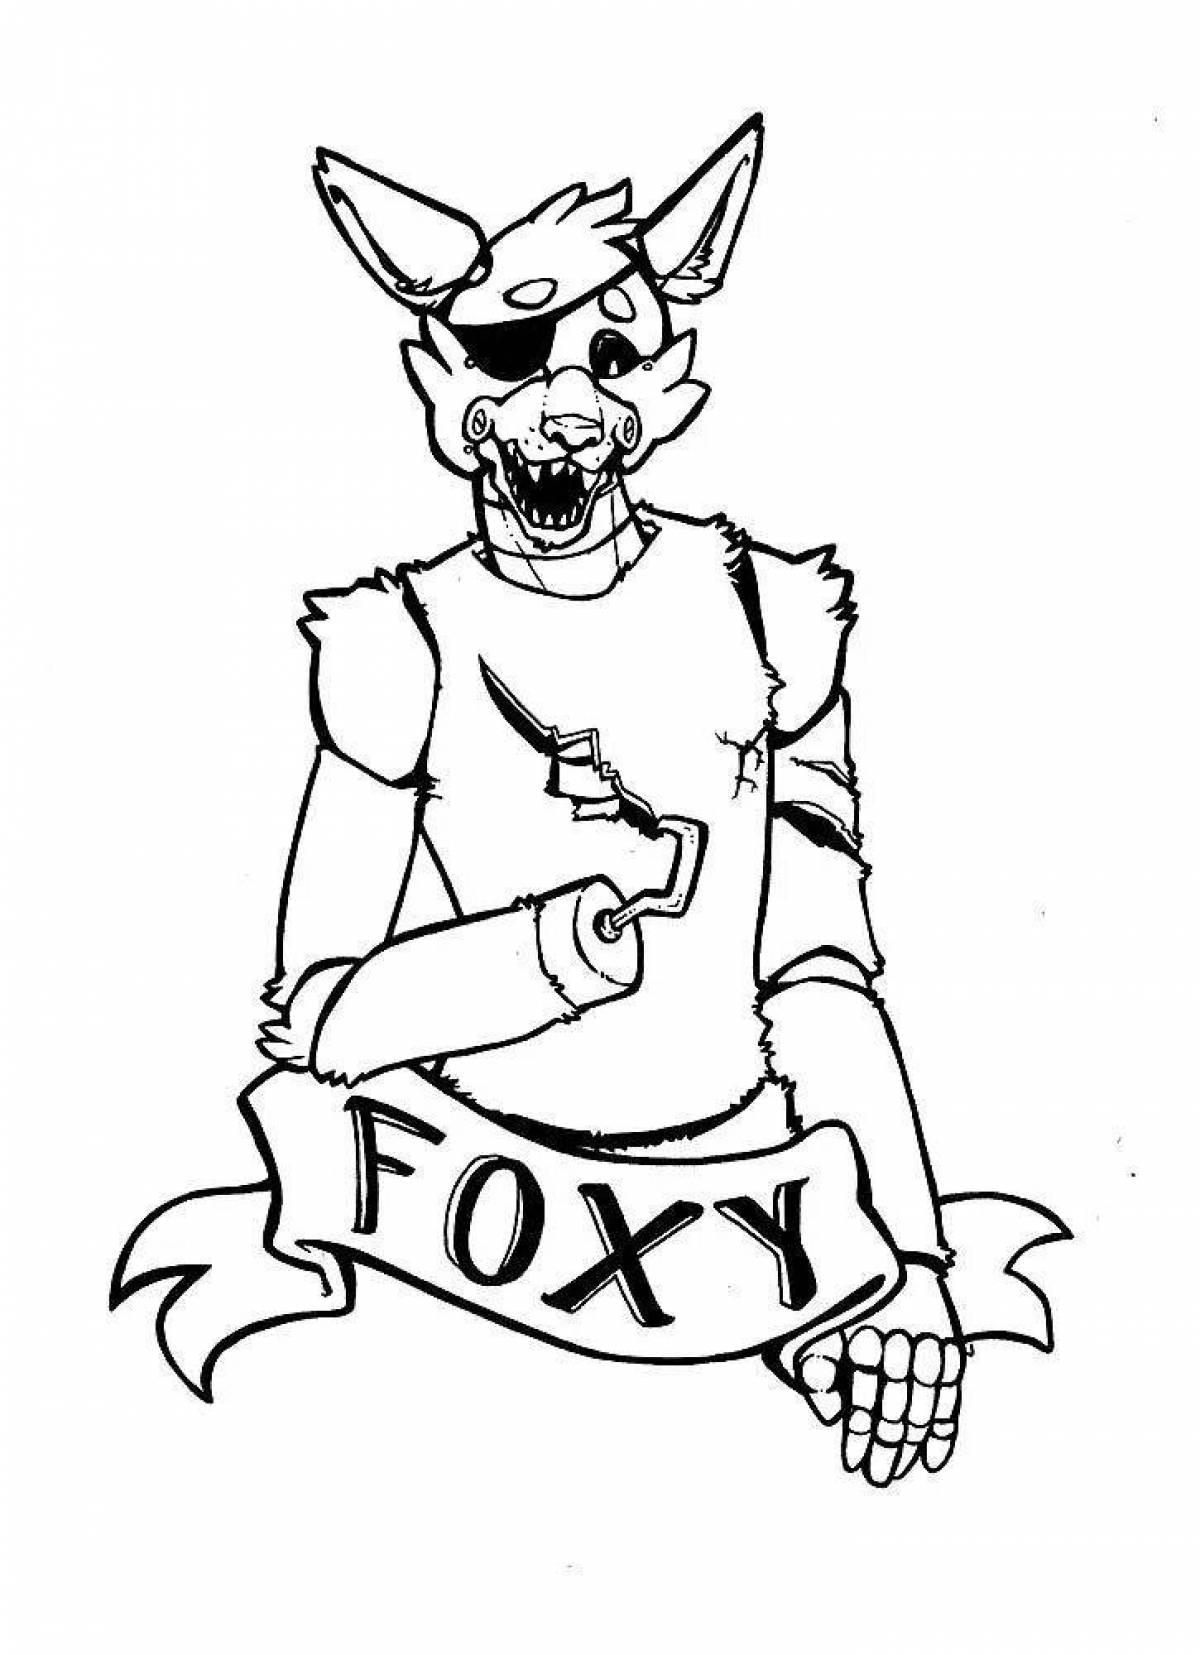 Rockstar foxy #7